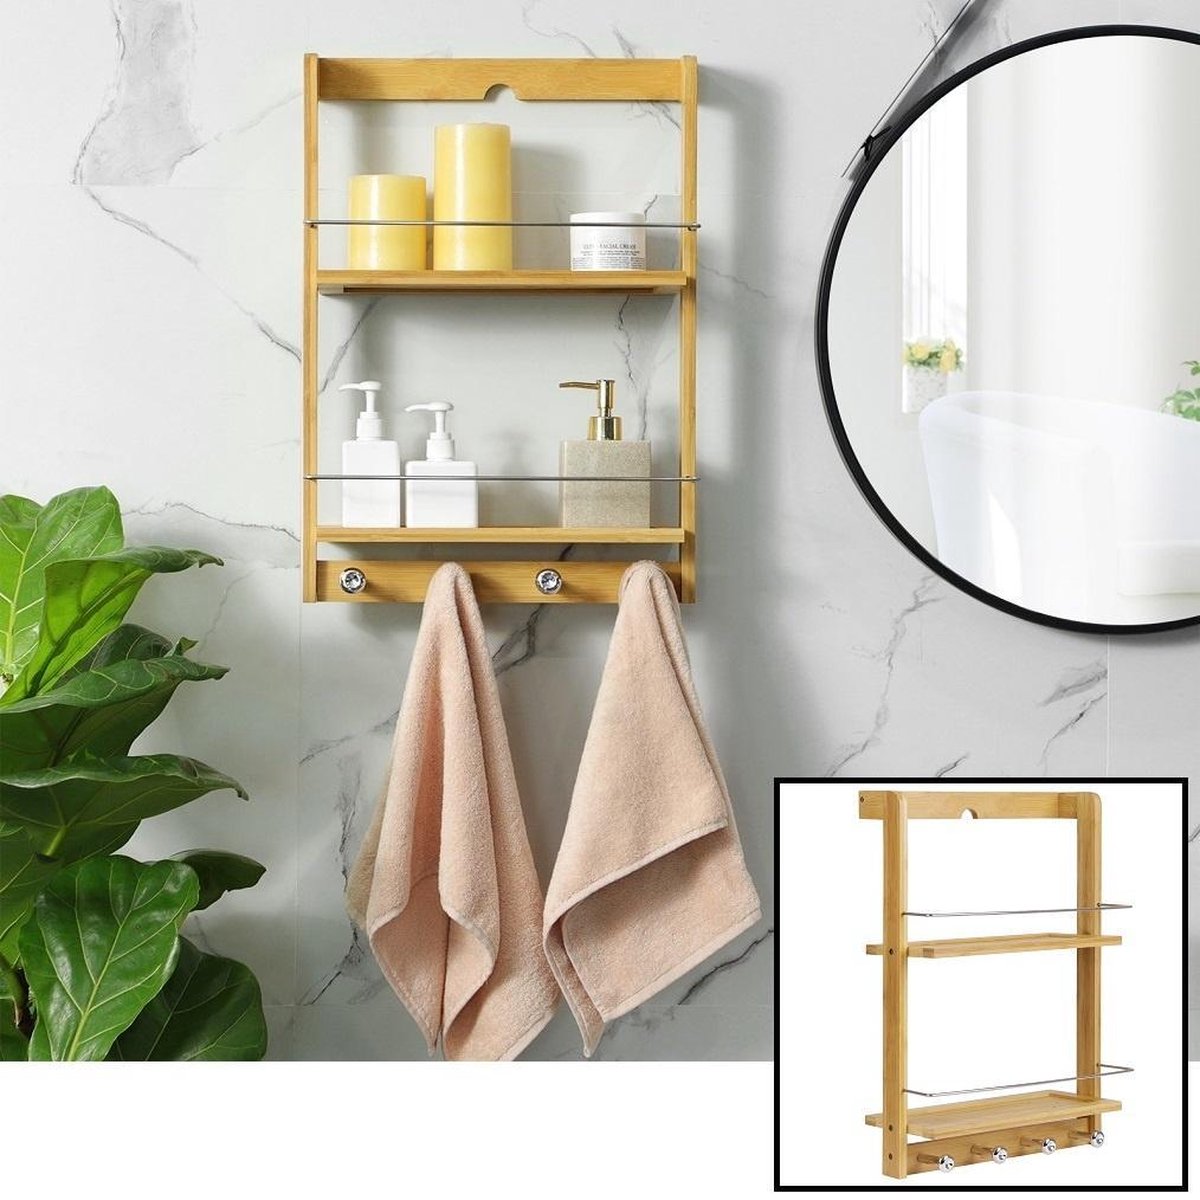 Decopatent® Hangend badkamerrek van bamboe hout - 2 legplanken en 4 handdoekhaakjes - Handdoekenrek - Handdoekenhouder - Wandrek